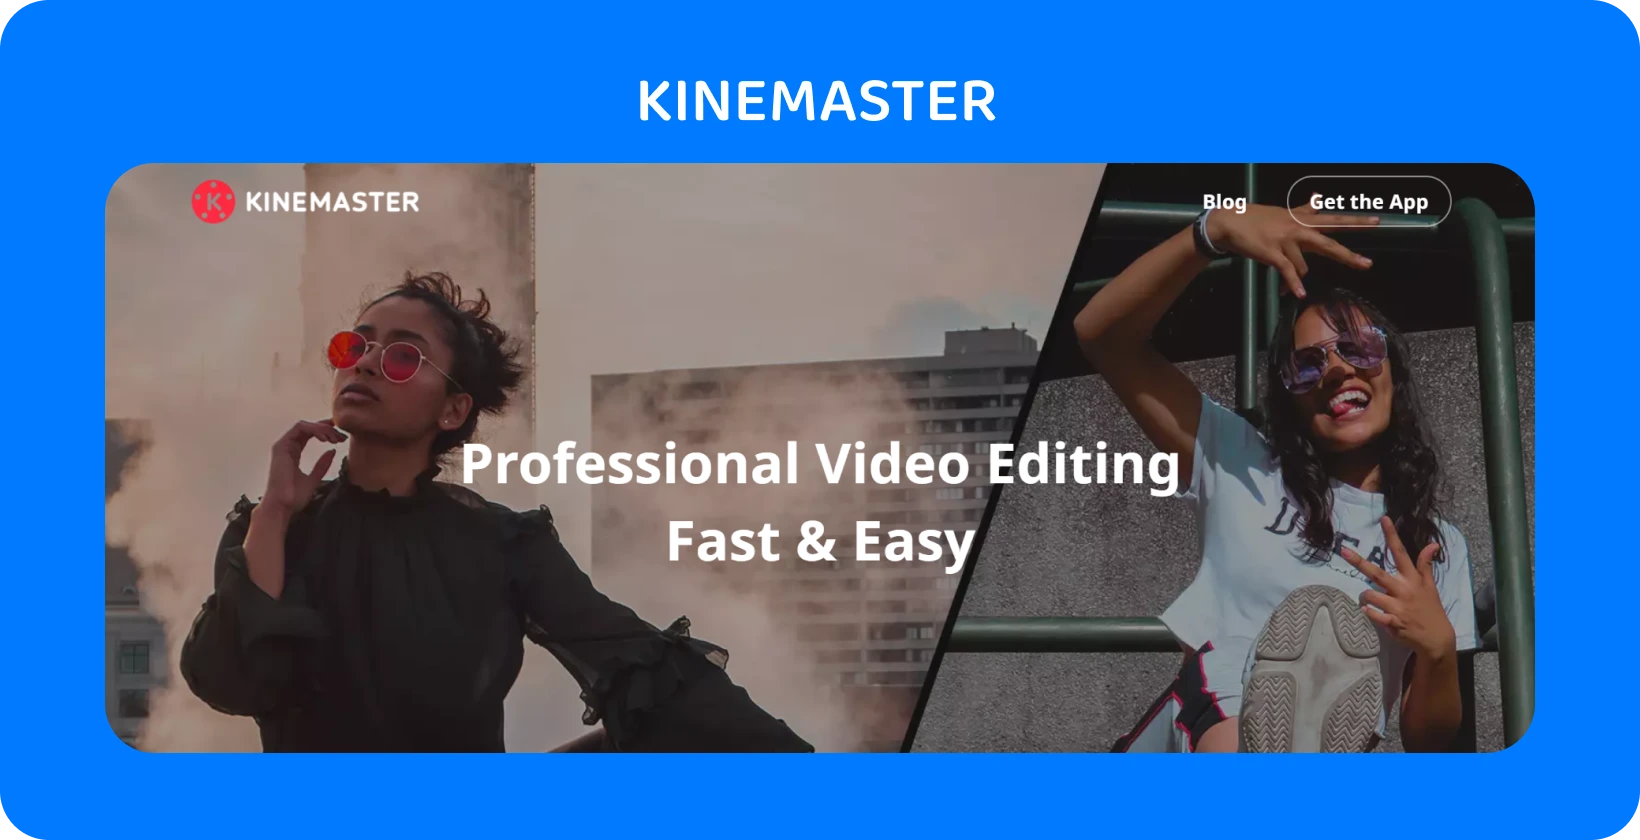 KineMaster reclamă la aplicație cu două modele care pozează, evidențiind editarea video profesională, rapidă și ușoară.